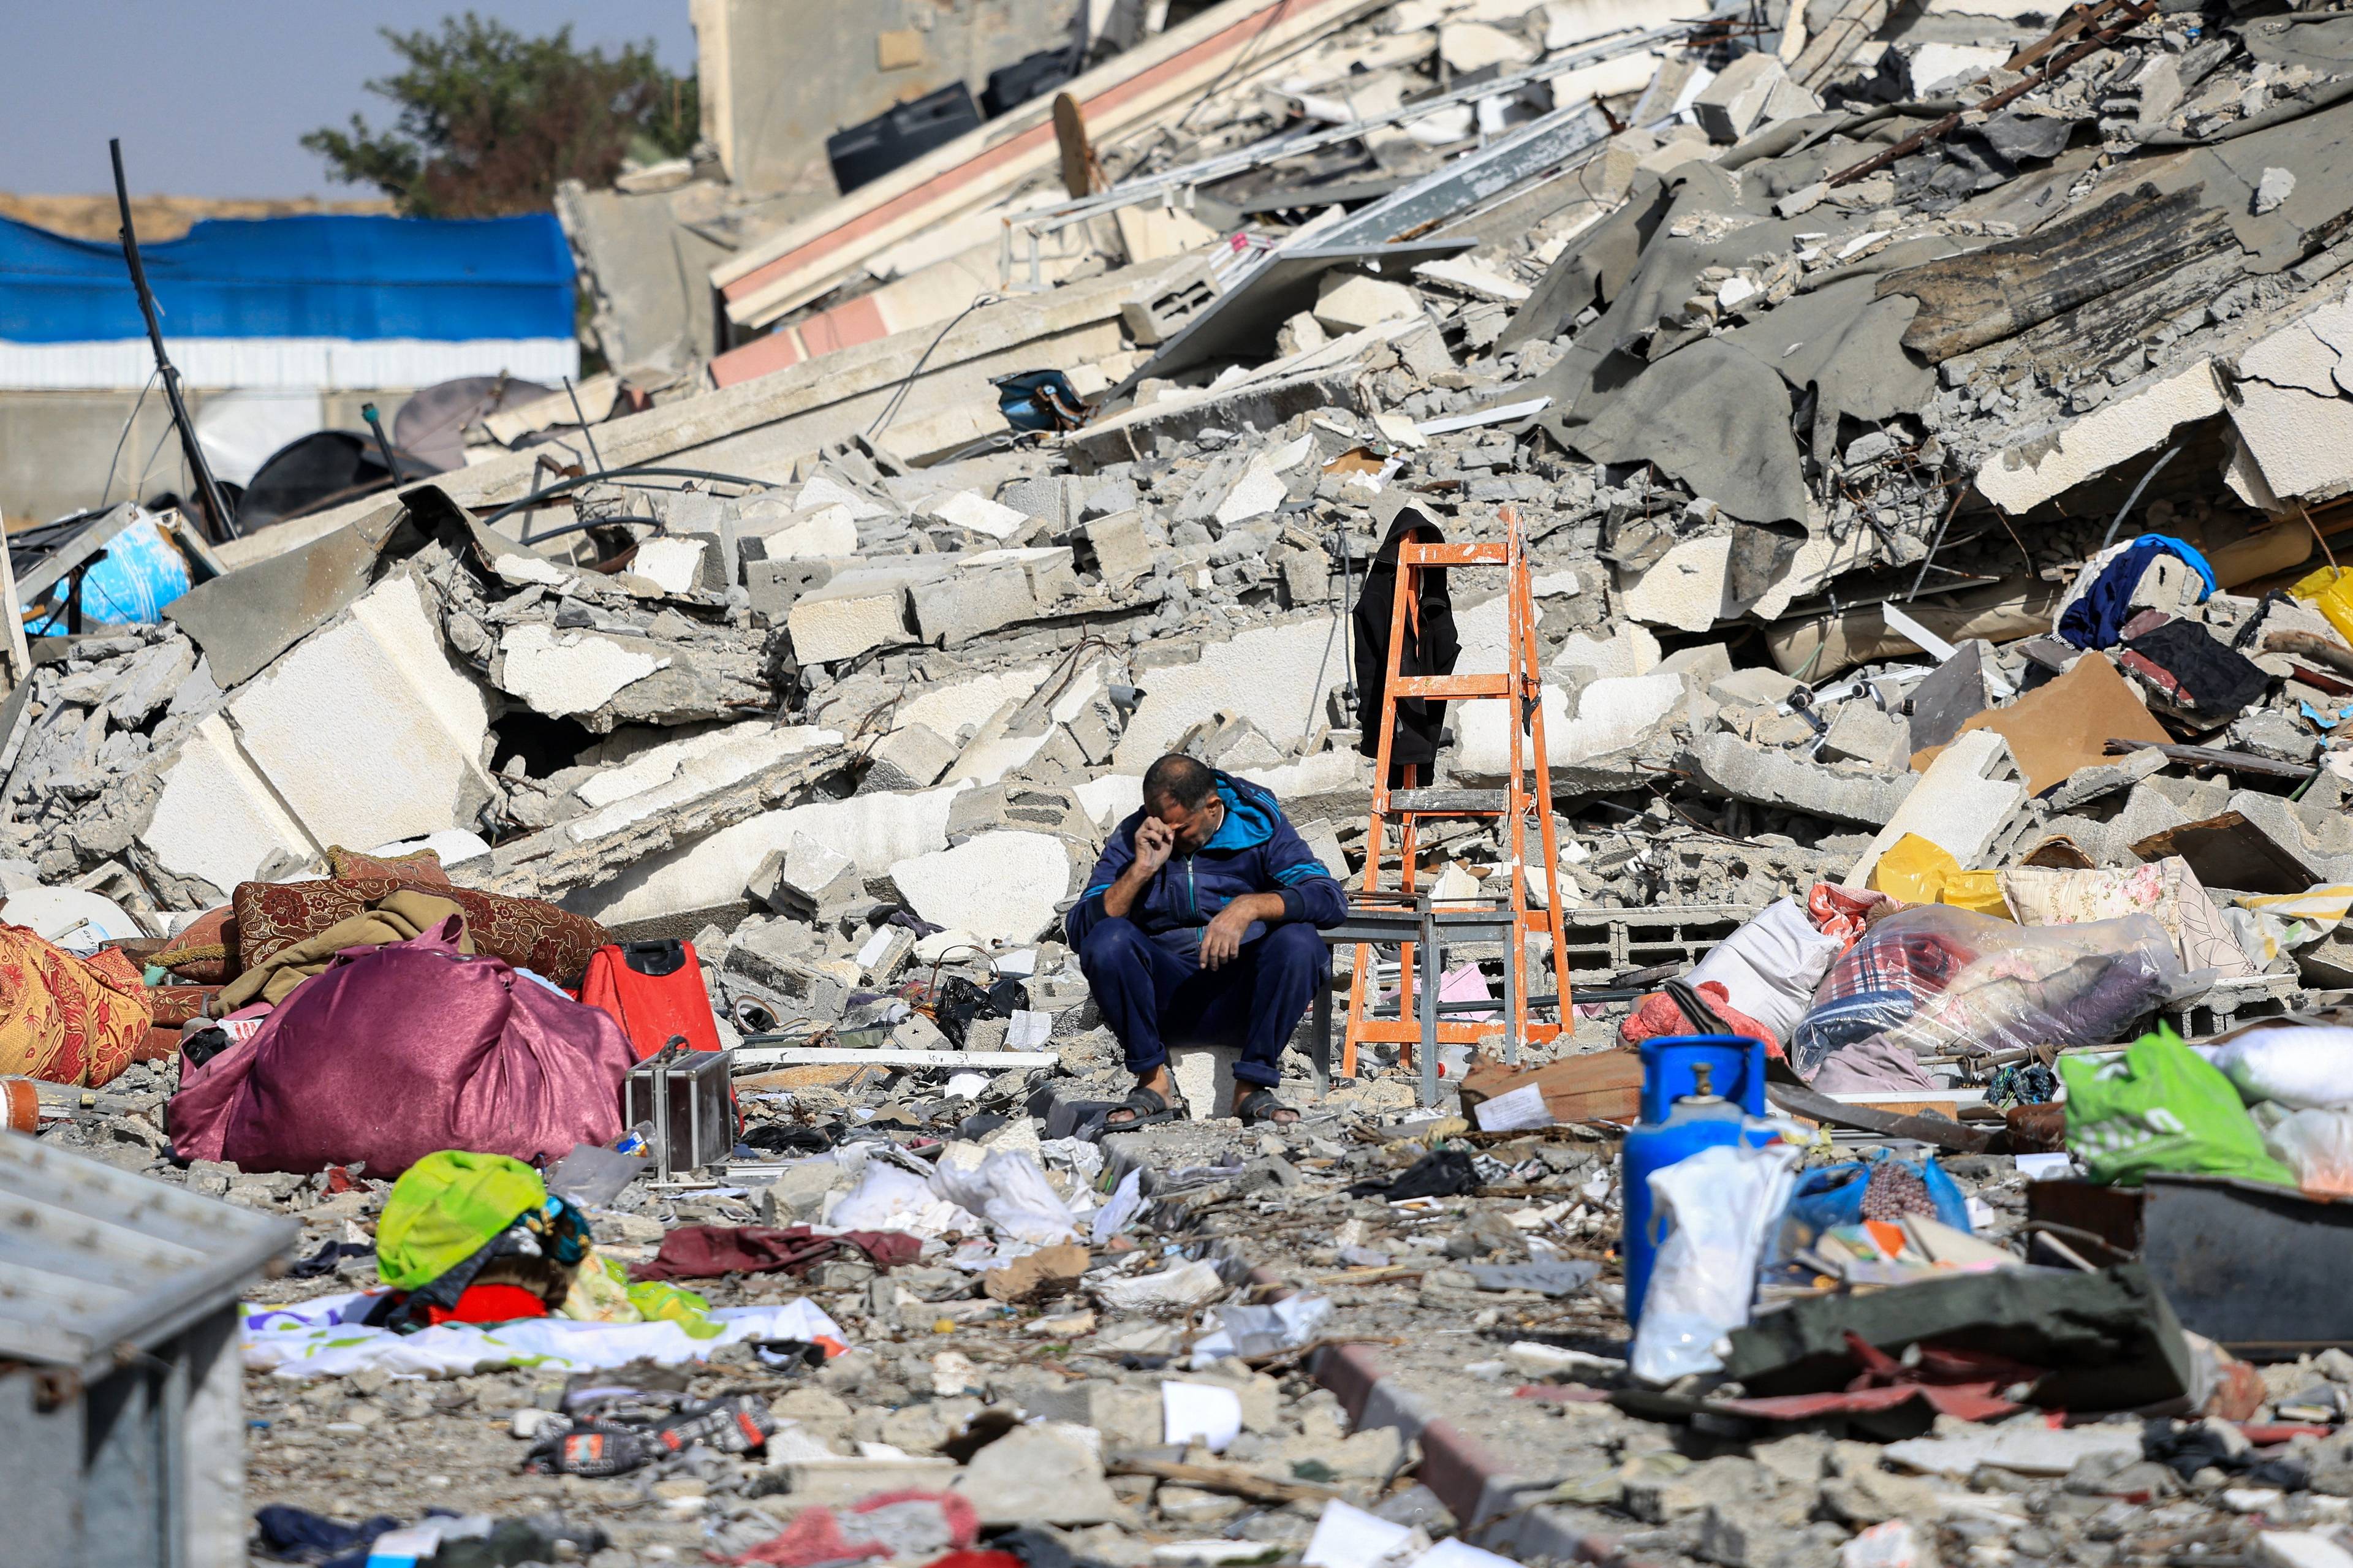 W Gazie cywile giną „w historycznym tempie”. Liczba ofiar cywilnych rośnie szybciej niż podczas wojen w Syrii, Iraku czy Ukrainie - twierdzi amerykański dziennik